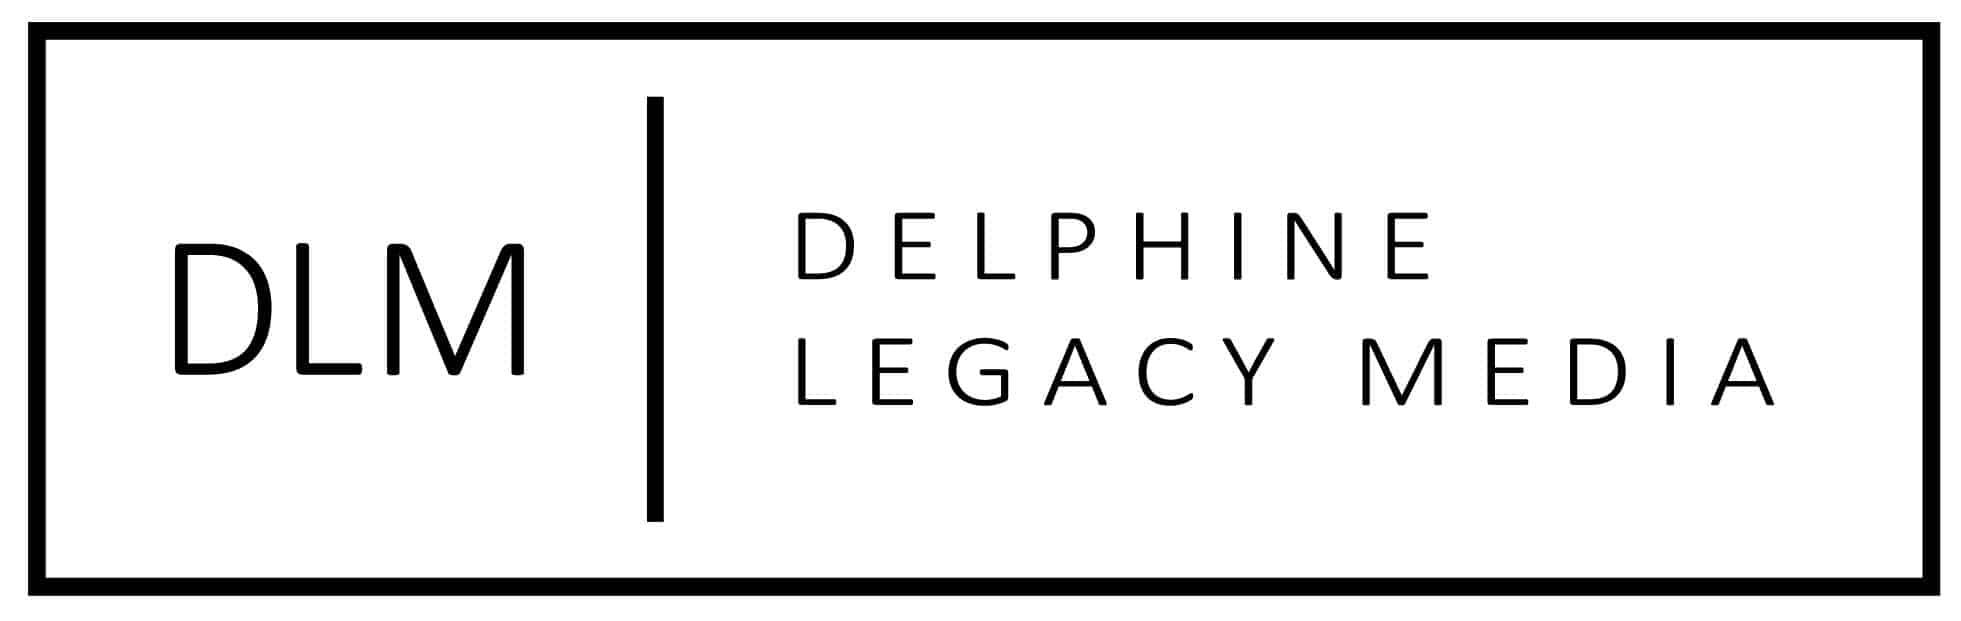 Delphine Legacy Media Logo _ blk-01